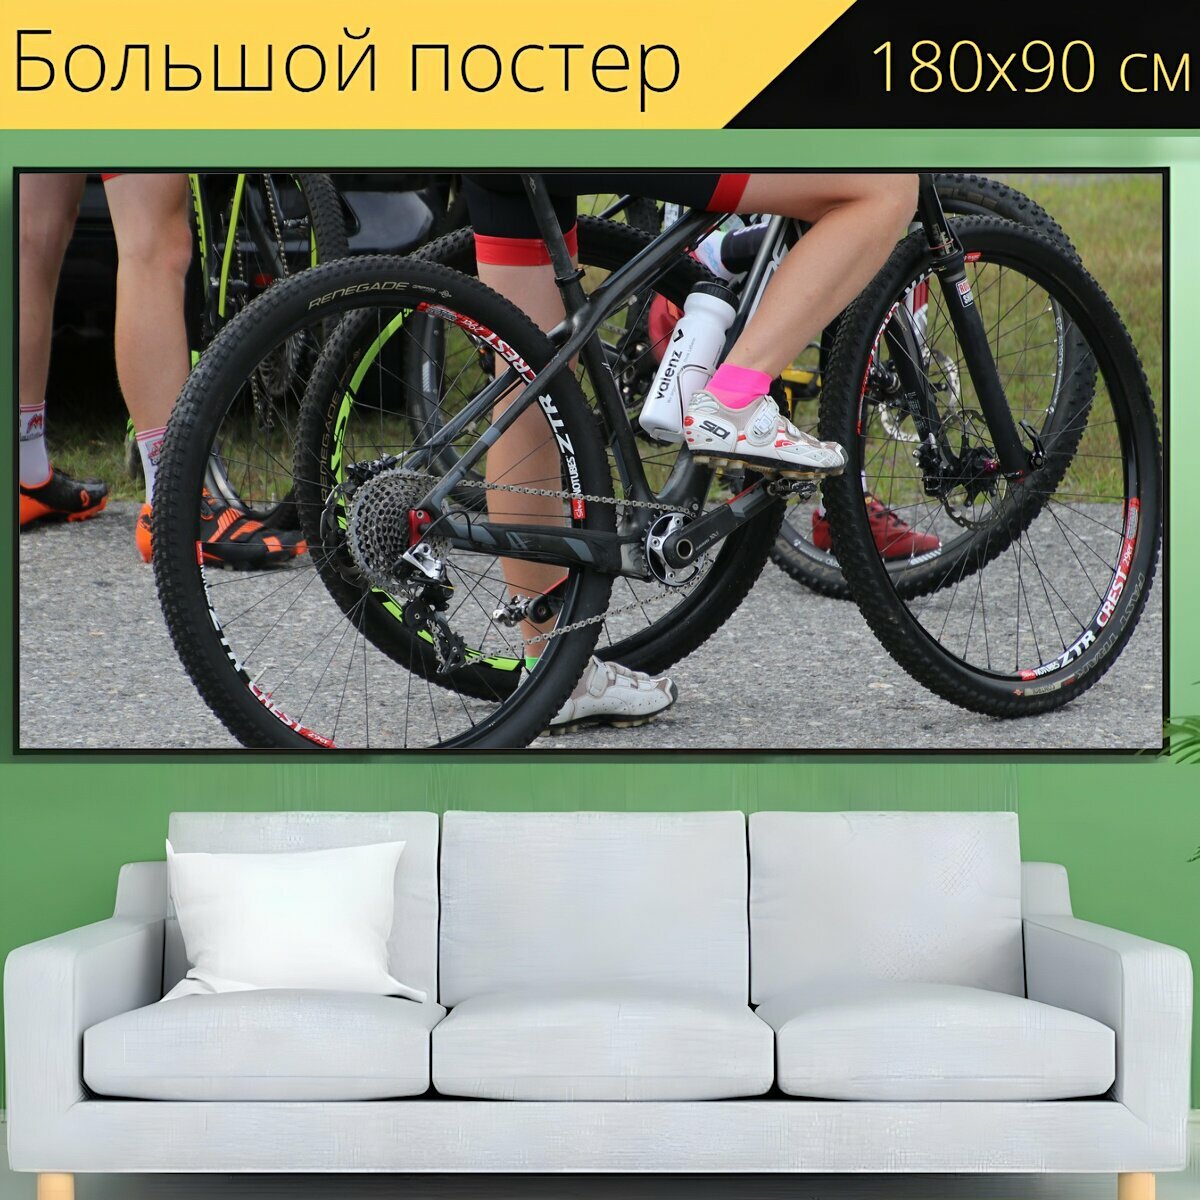 Большой постер "Велосипед, кататься на велосипеде, велосипедист" 180 x 90 см. для интерьера